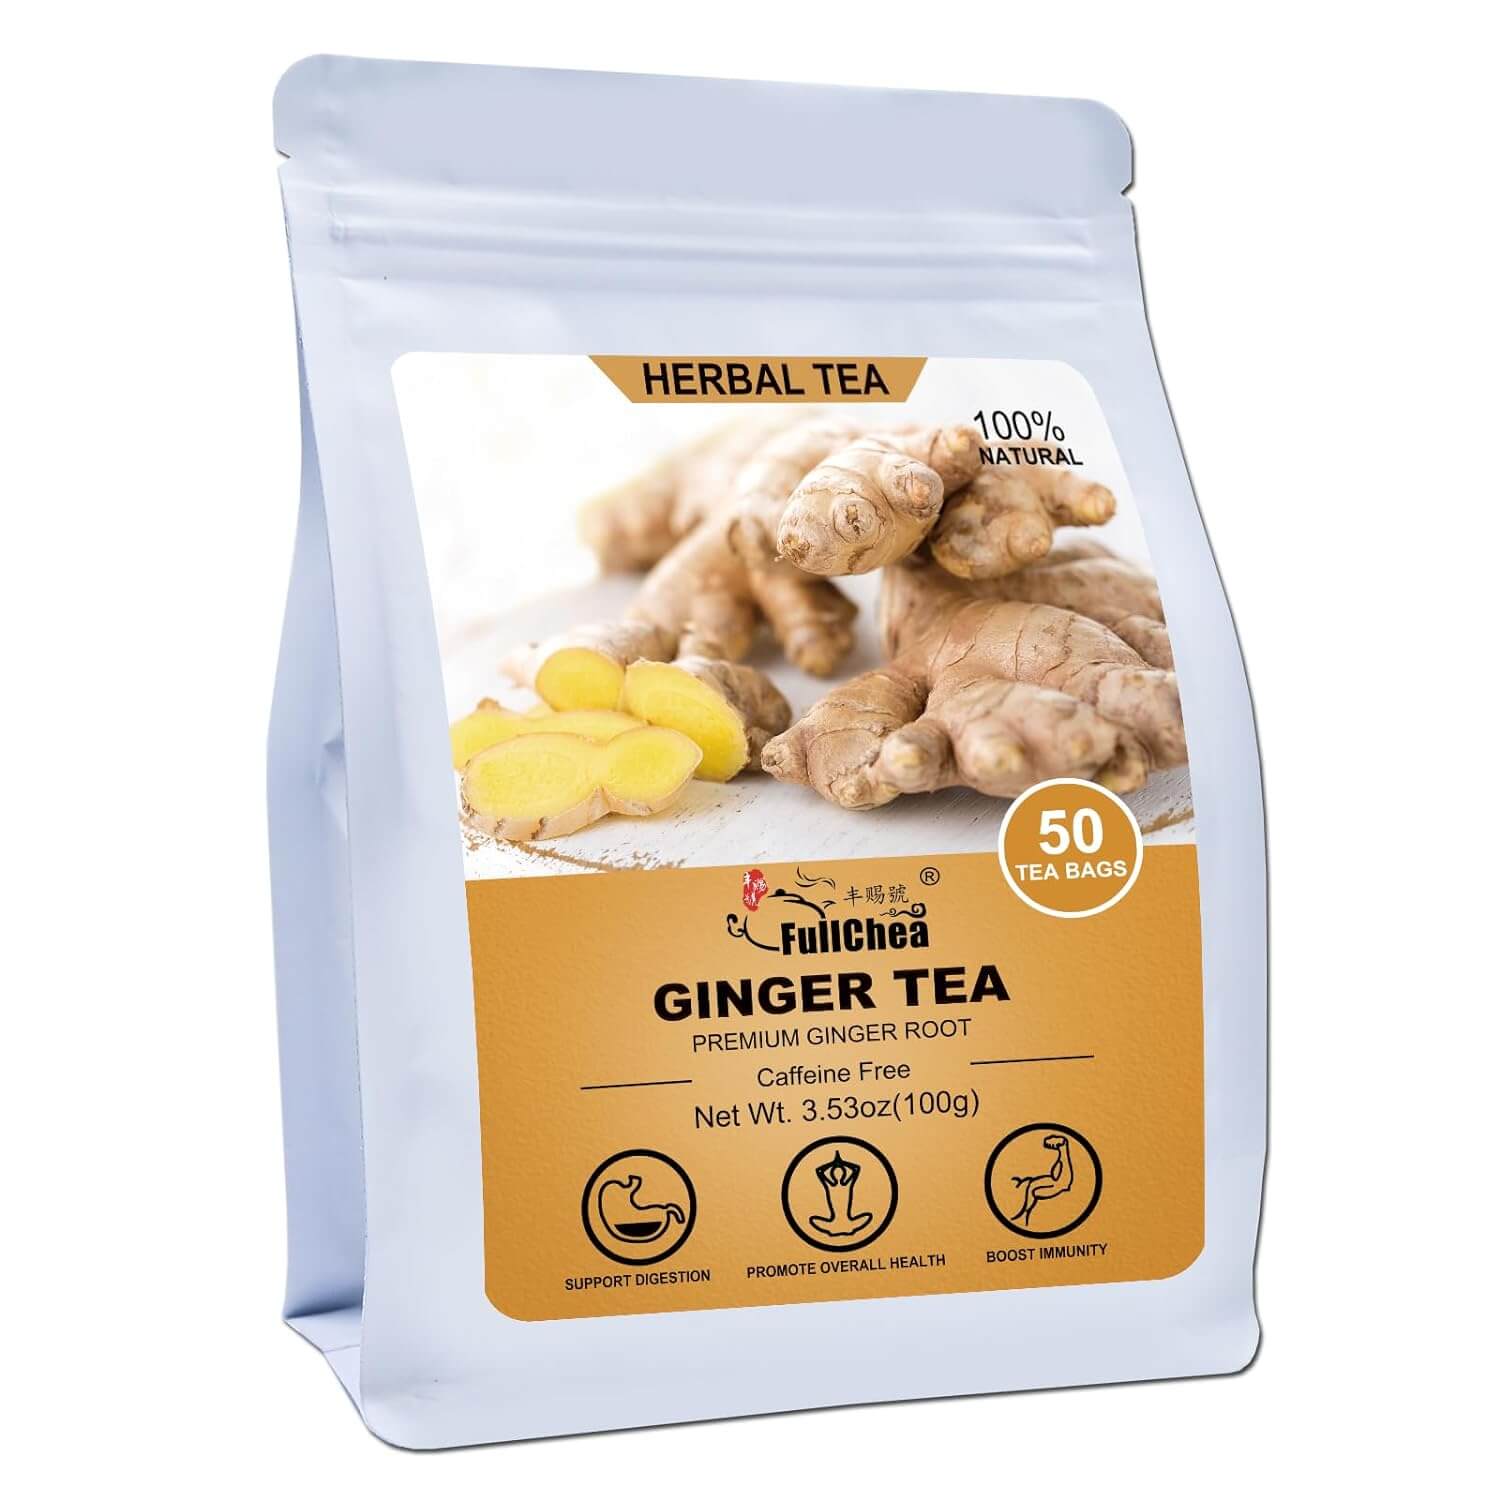 Amazon's Best Seller: FullChea Ginger Tea